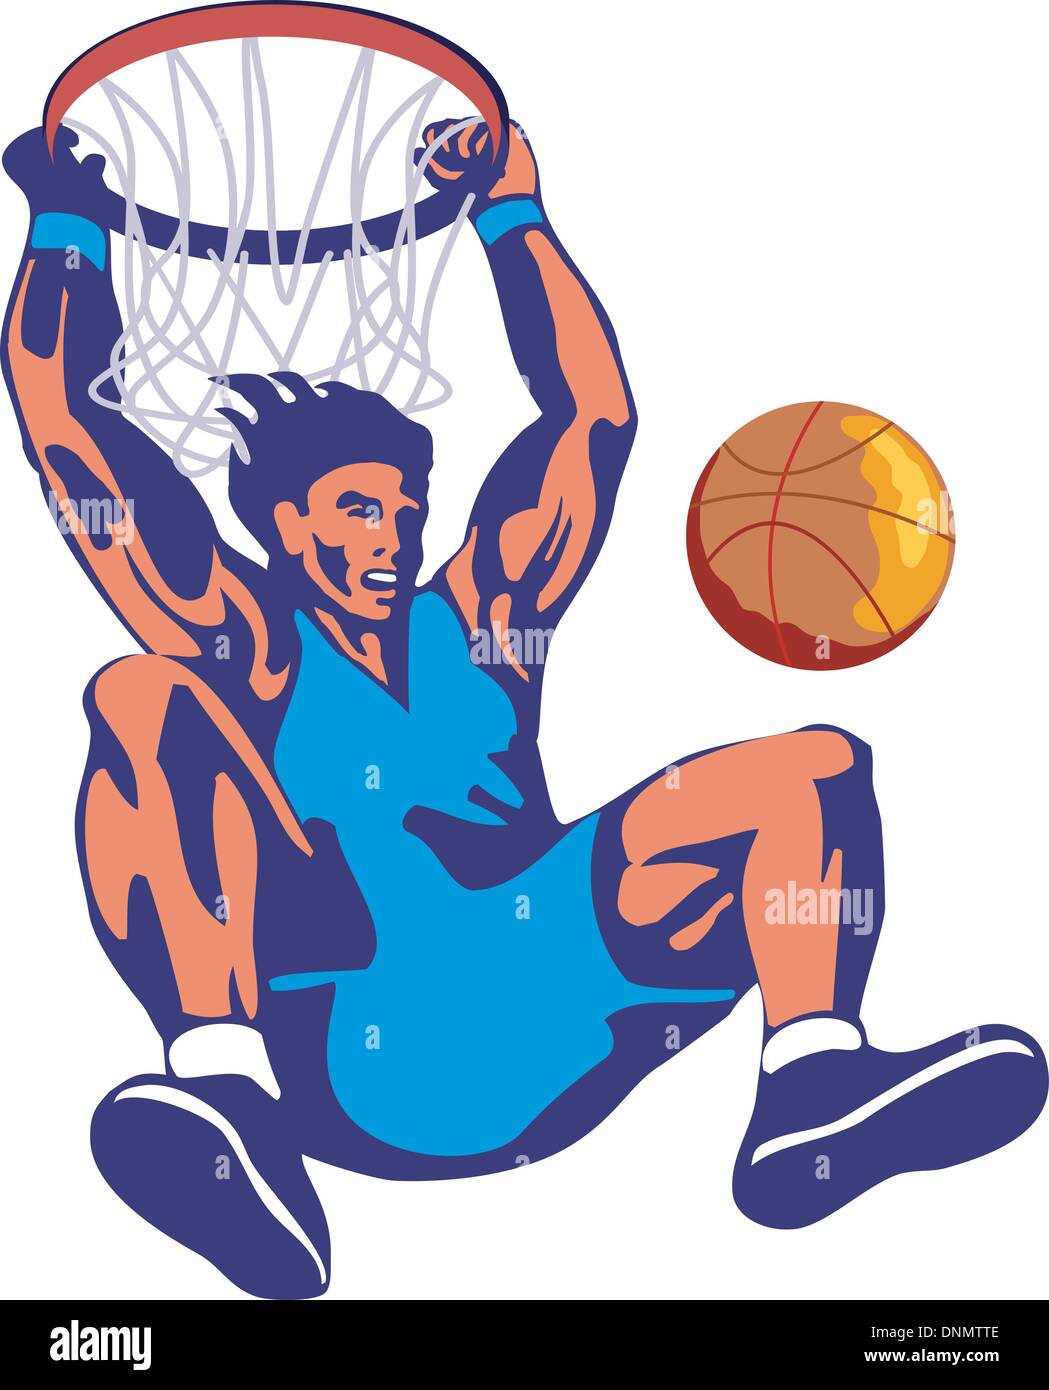 Illustrazione di un giocatore di basket ball dunking fatto in stile retrò. Illustrazione Vettoriale